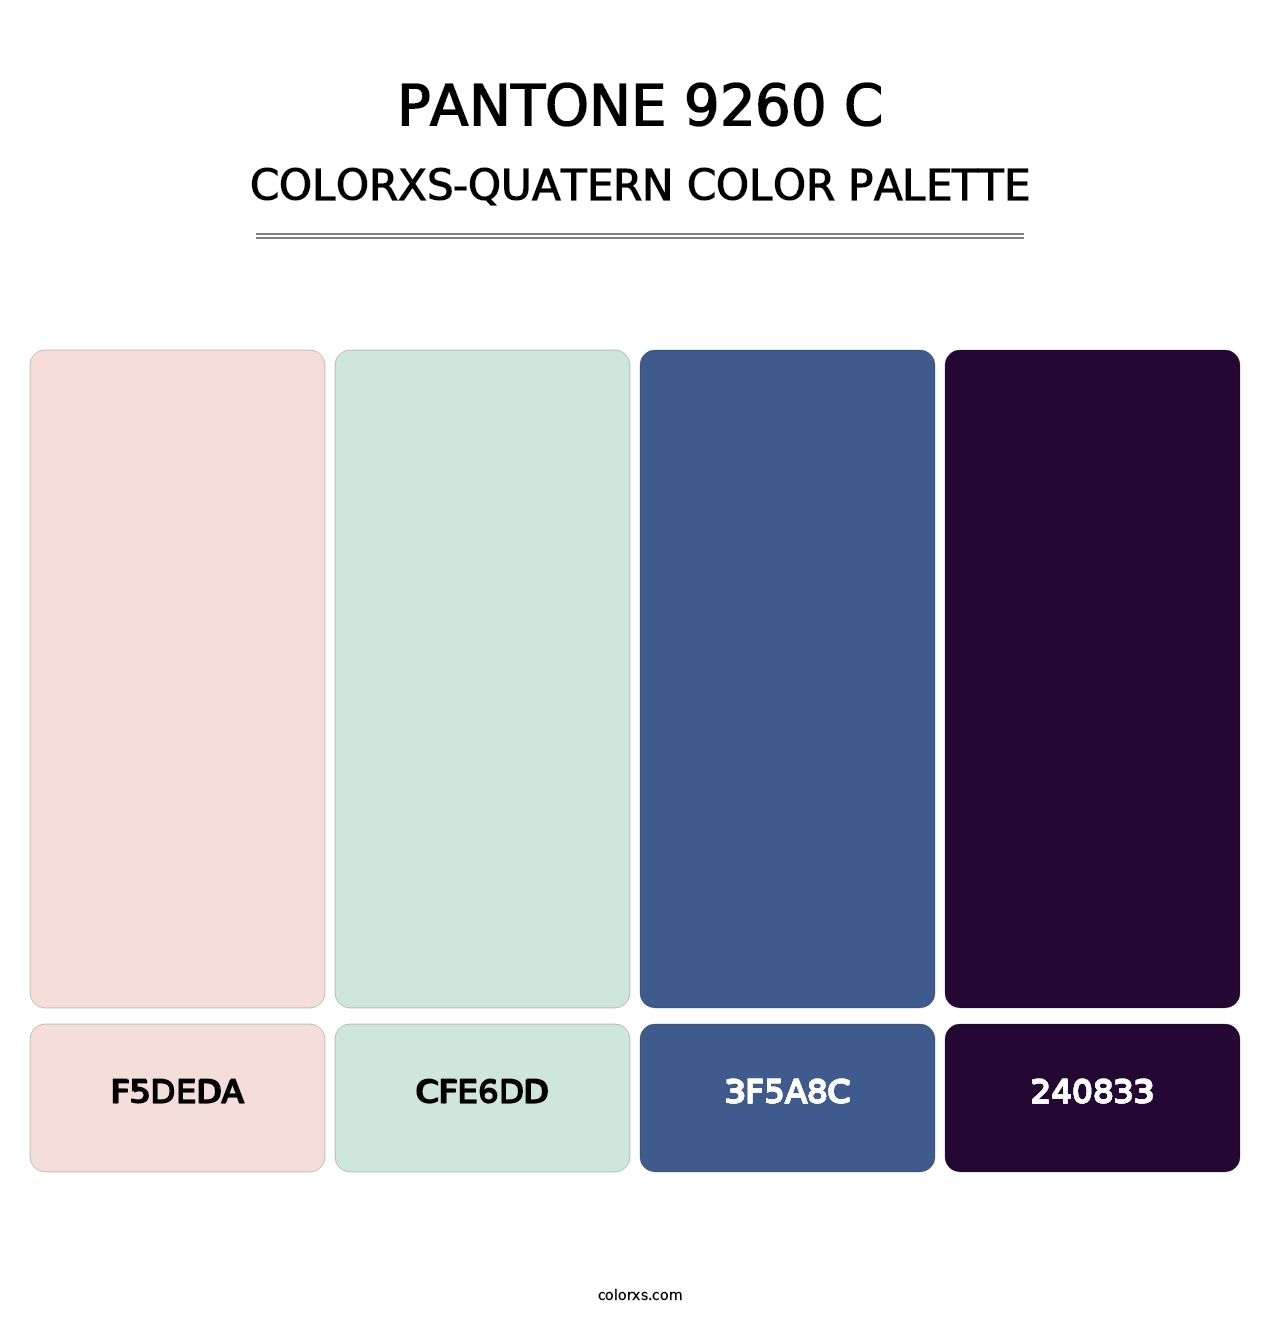 PANTONE 9260 C - Colorxs Quatern Palette